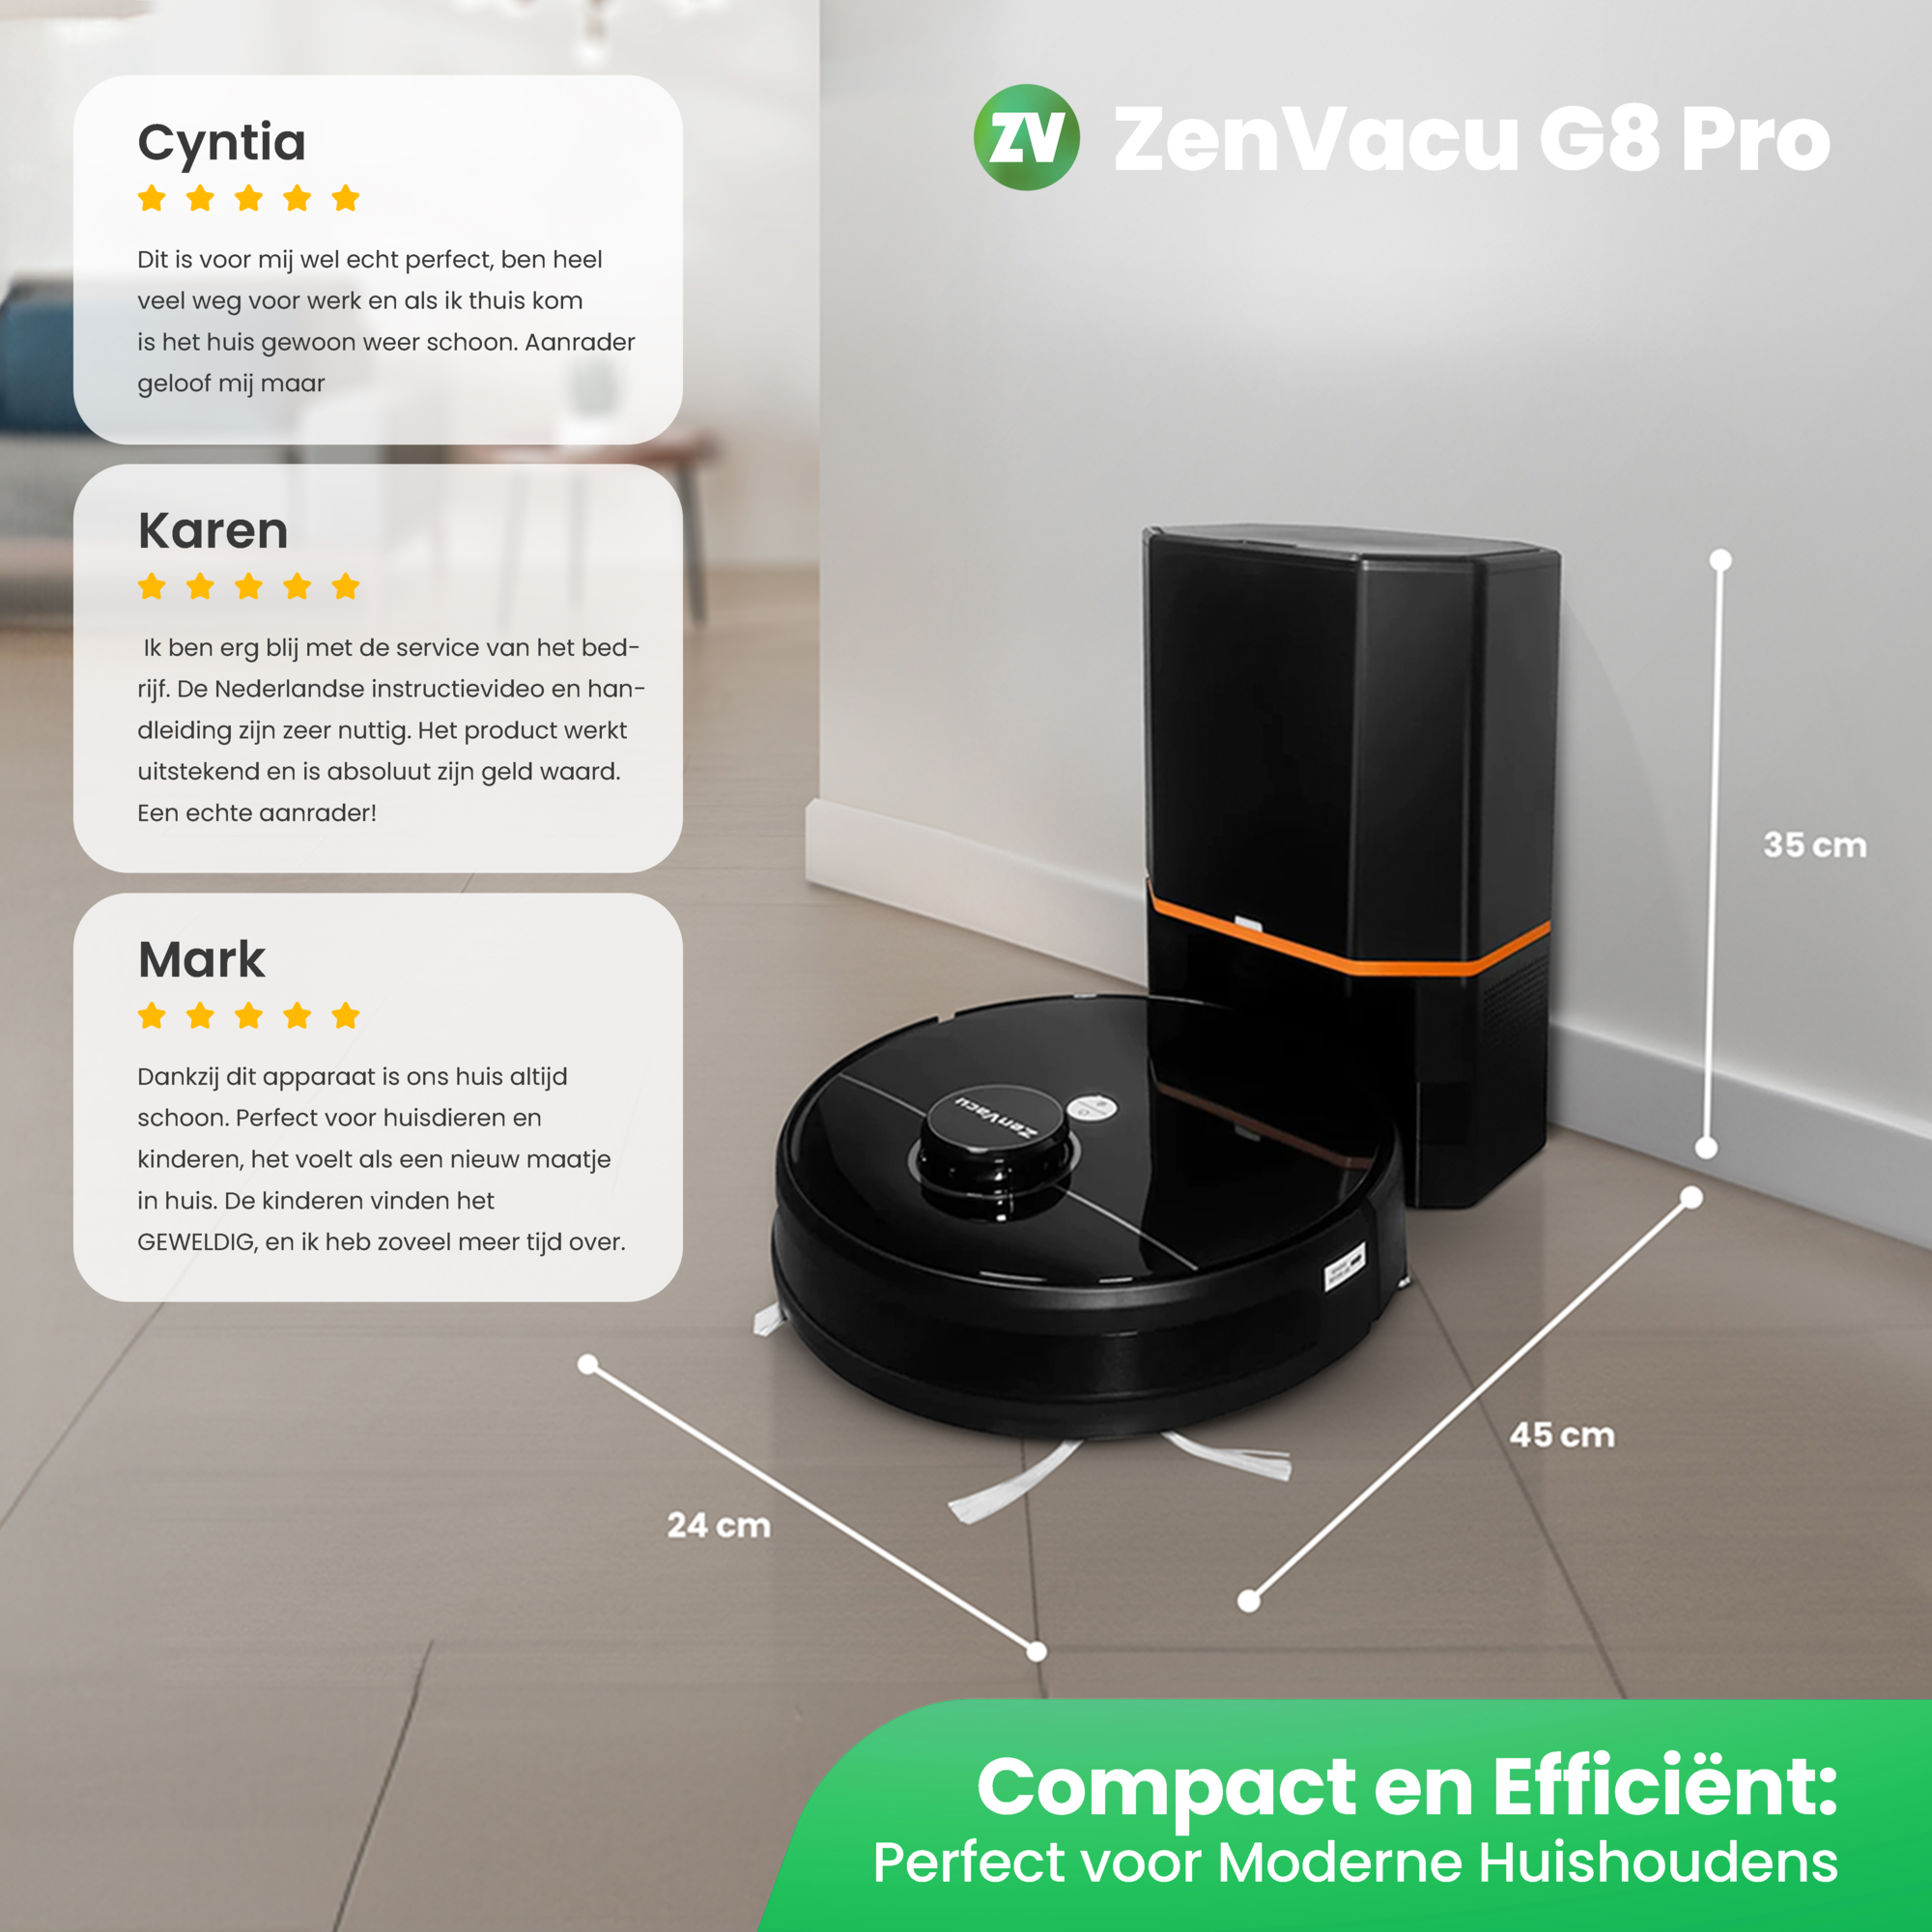 5 Sterren Reviews ZenVacu G8 Pro, Perfect voor elke soort huishouden